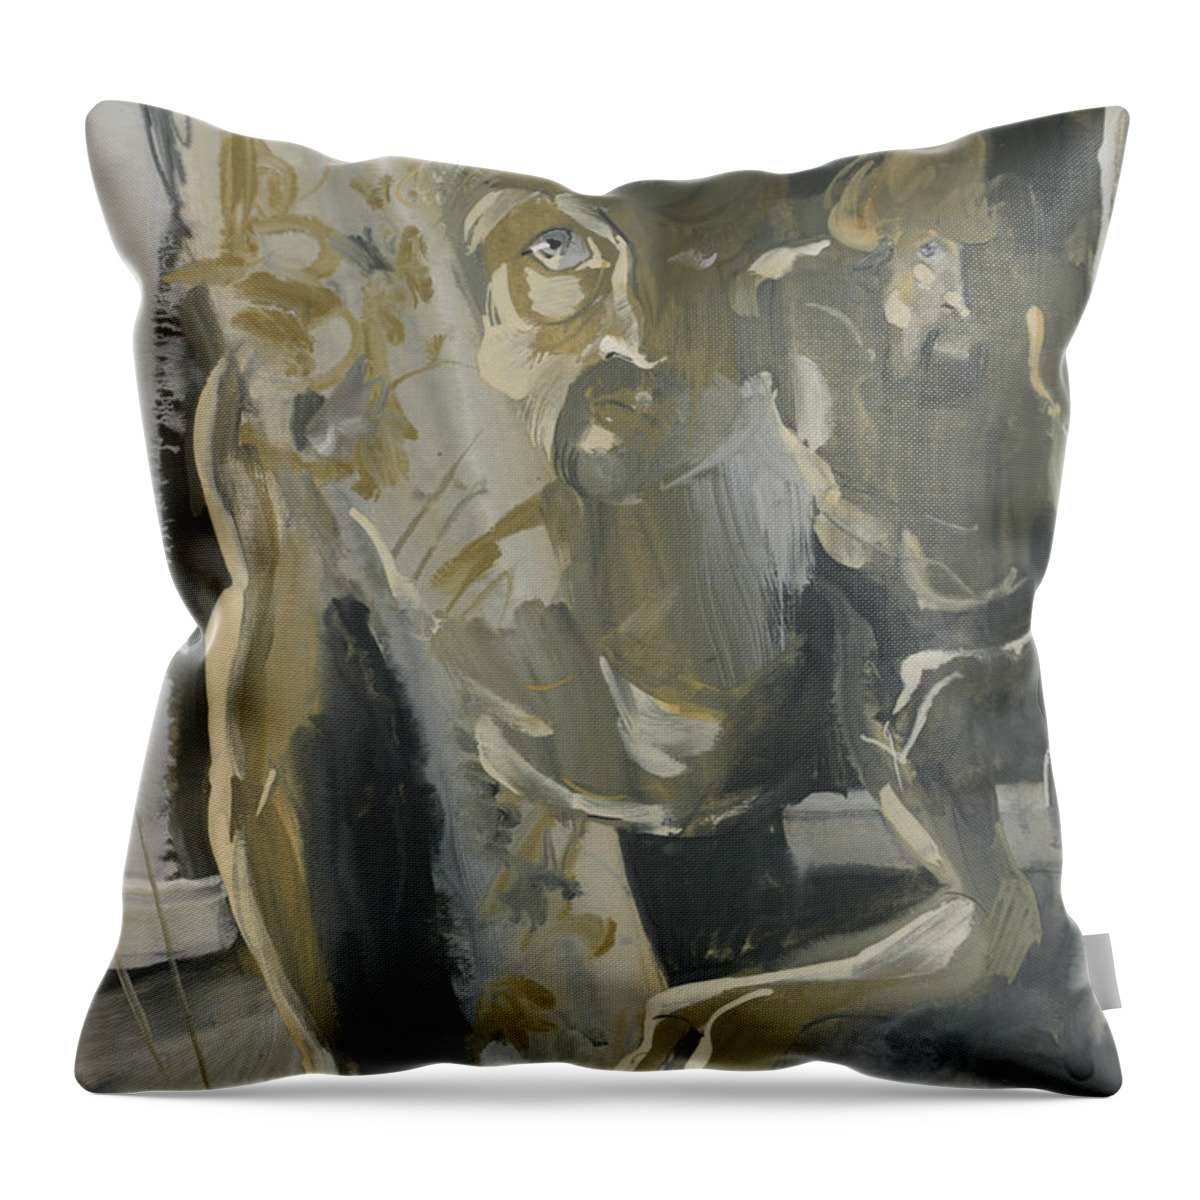 Igor Sakurov Throw Pillow featuring the painting Face. Window Series by Igor Sakurov